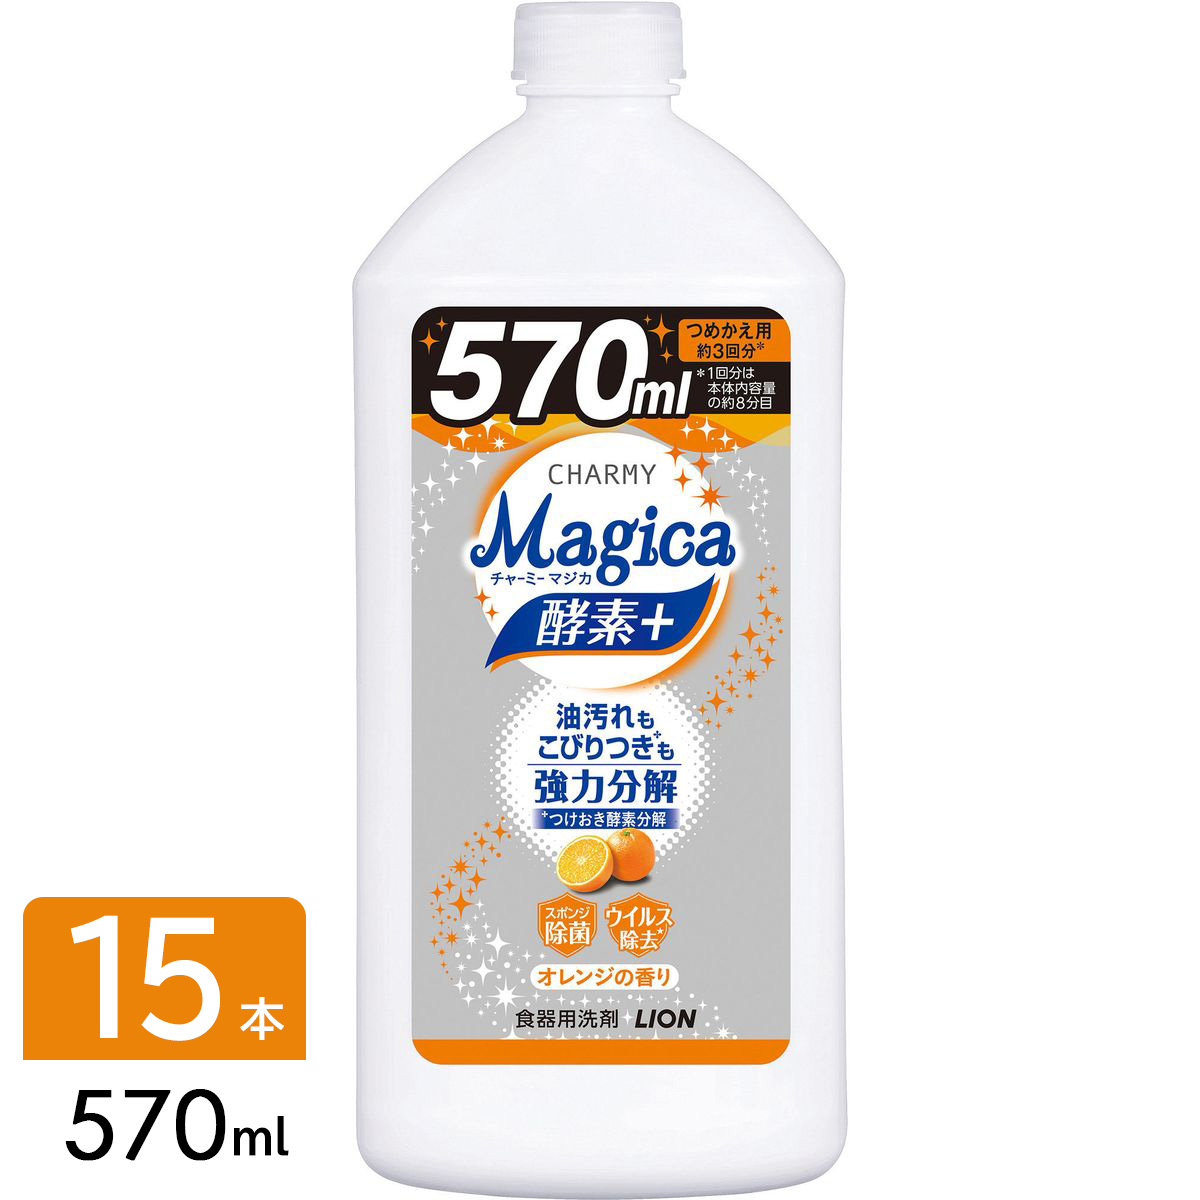 ライオン CHARMY チャーミー Magica マジカ 酵素 フルーティオレンジ 食器用洗剤 詰め替え 570ml×15本  4903301283539 通販